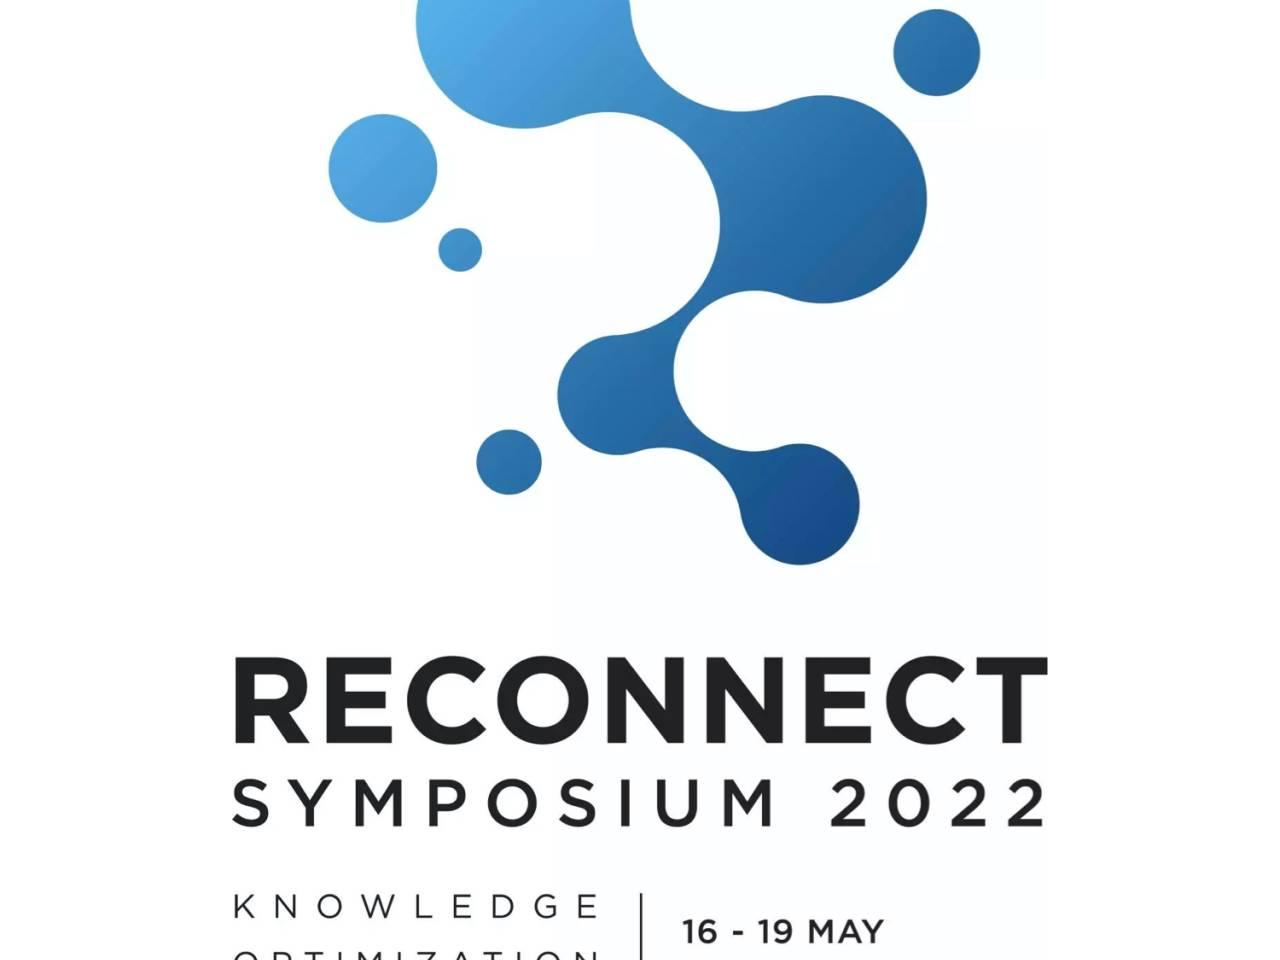 Reconnect Symposium 2022